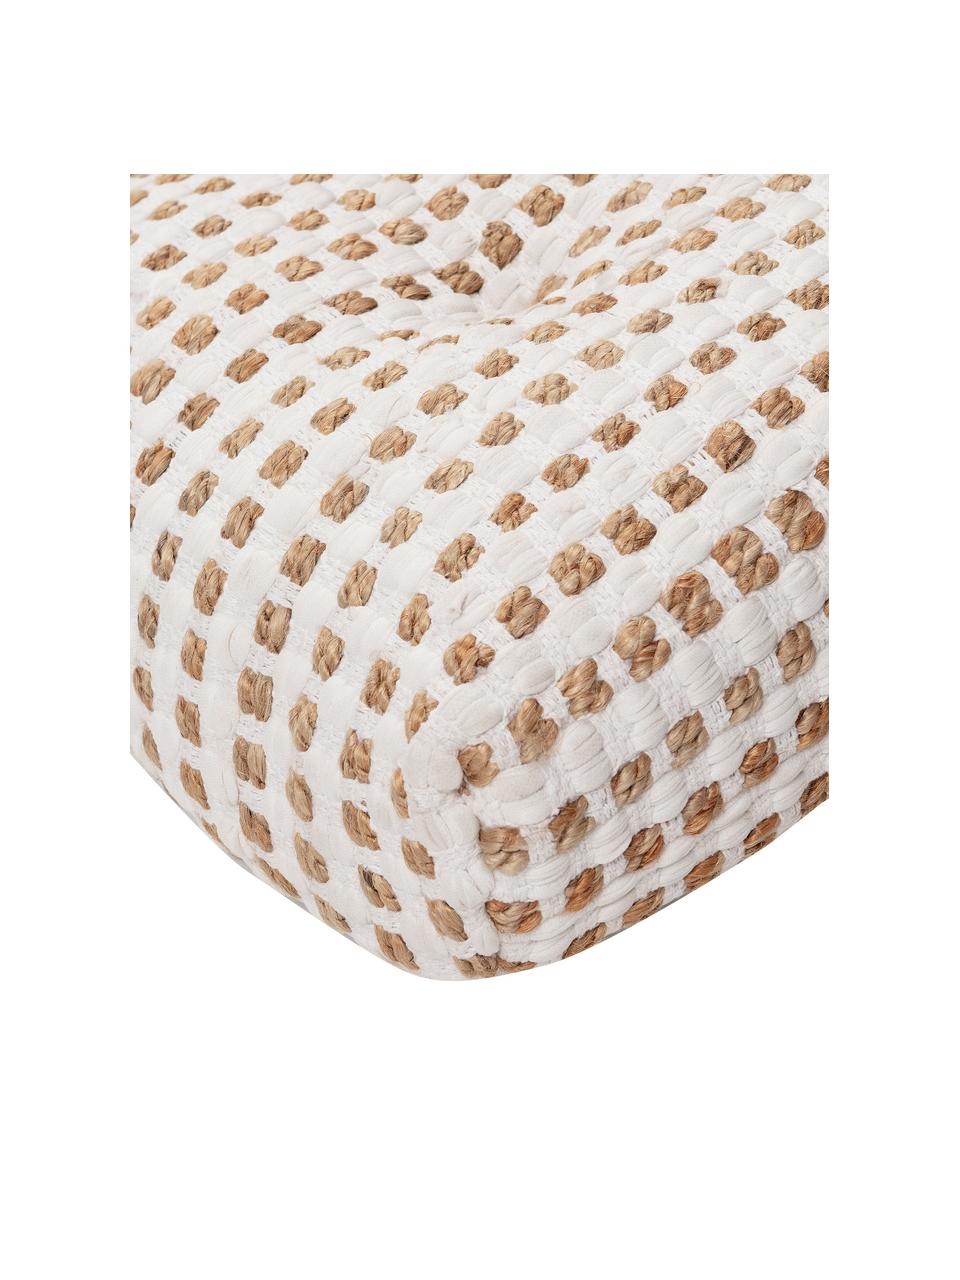 Cojín de suelo de algodón y yute Fiesta, estilo boho, Tapizado: 55% algodón chindi, 45% y, Blanco, beige, An 60 x Al 13 cm